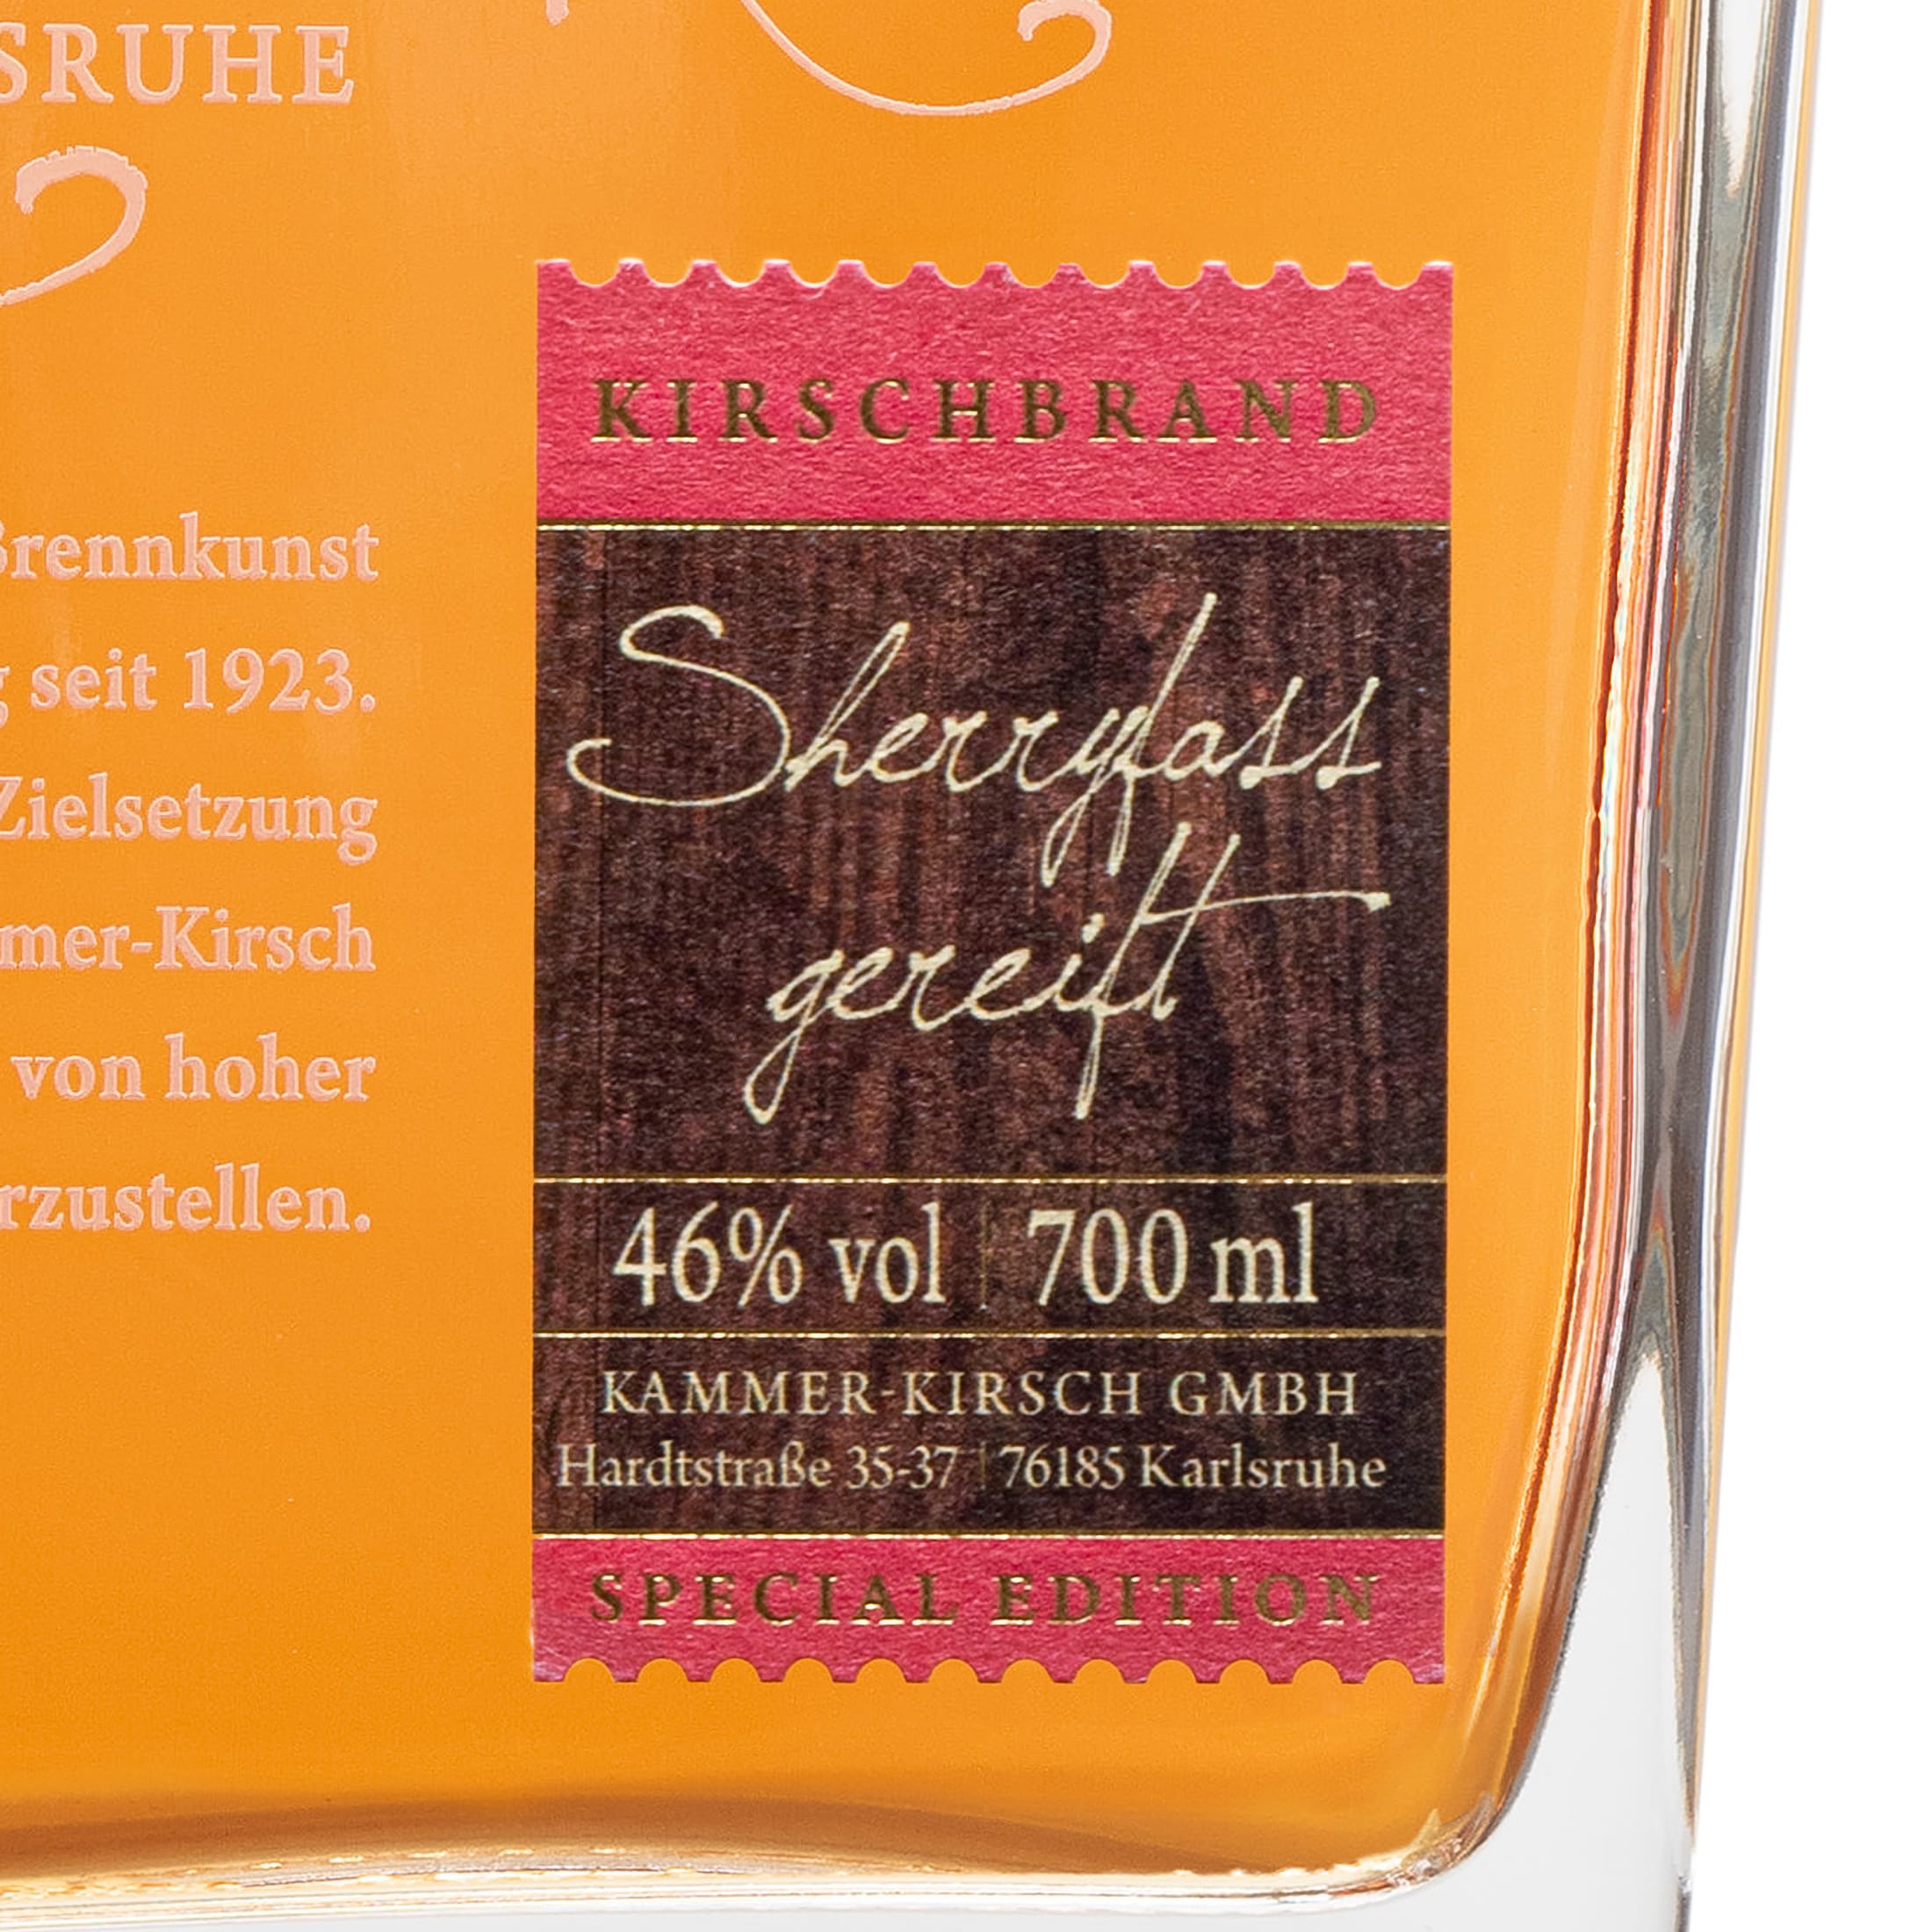 Cherry brandy matured in sherry casks - gourmet fruit brandy - Distillery Kammer-Kirsch